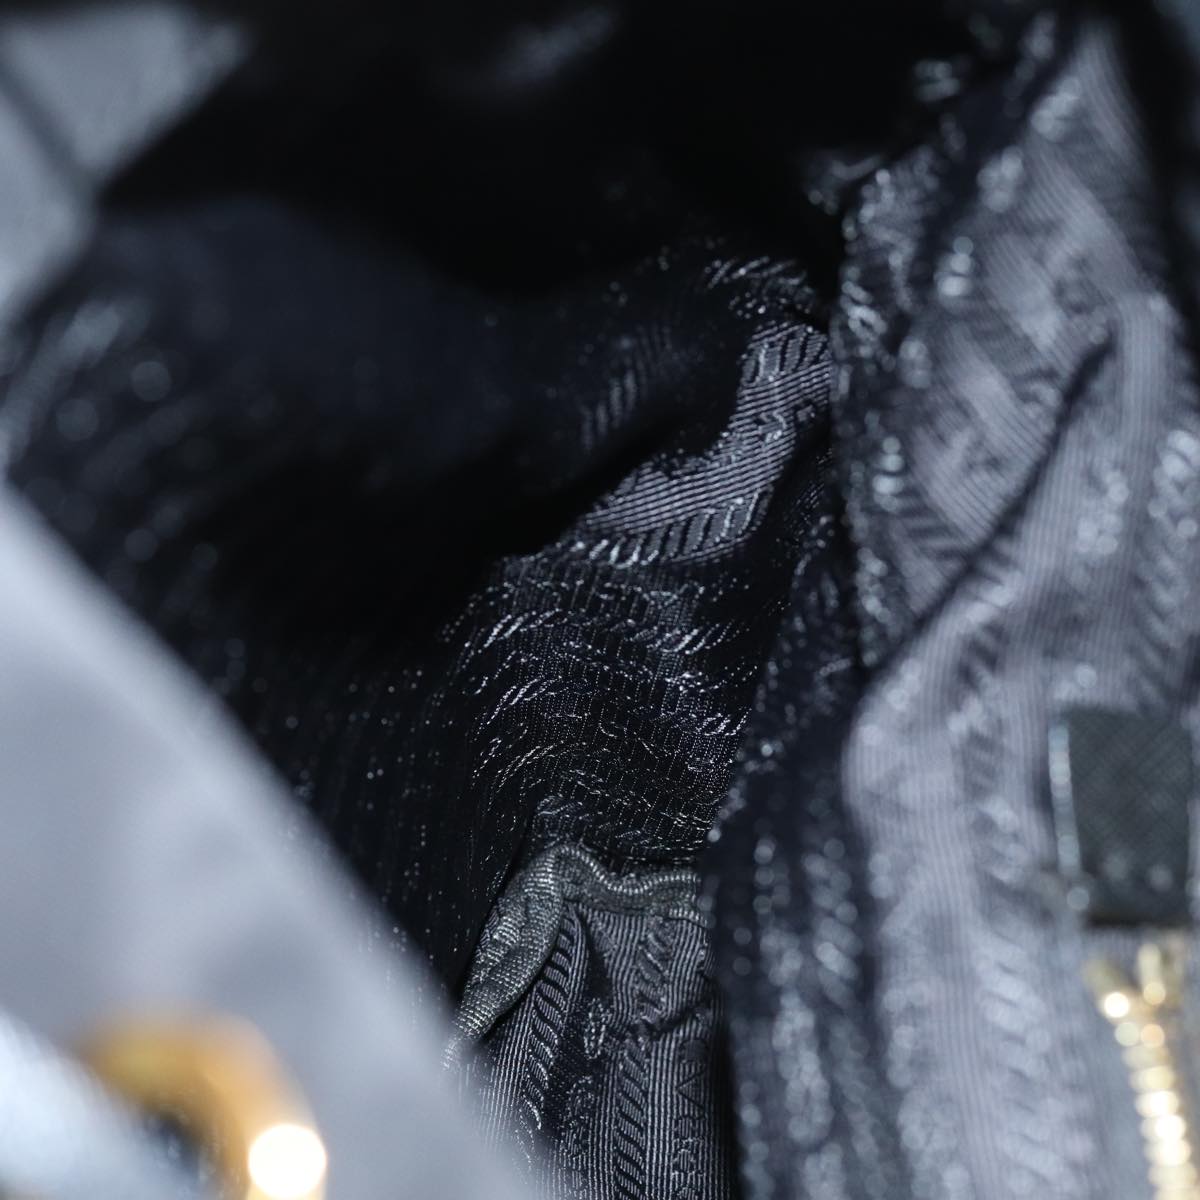 PRADA Backpack Nylon Black Auth 74402A